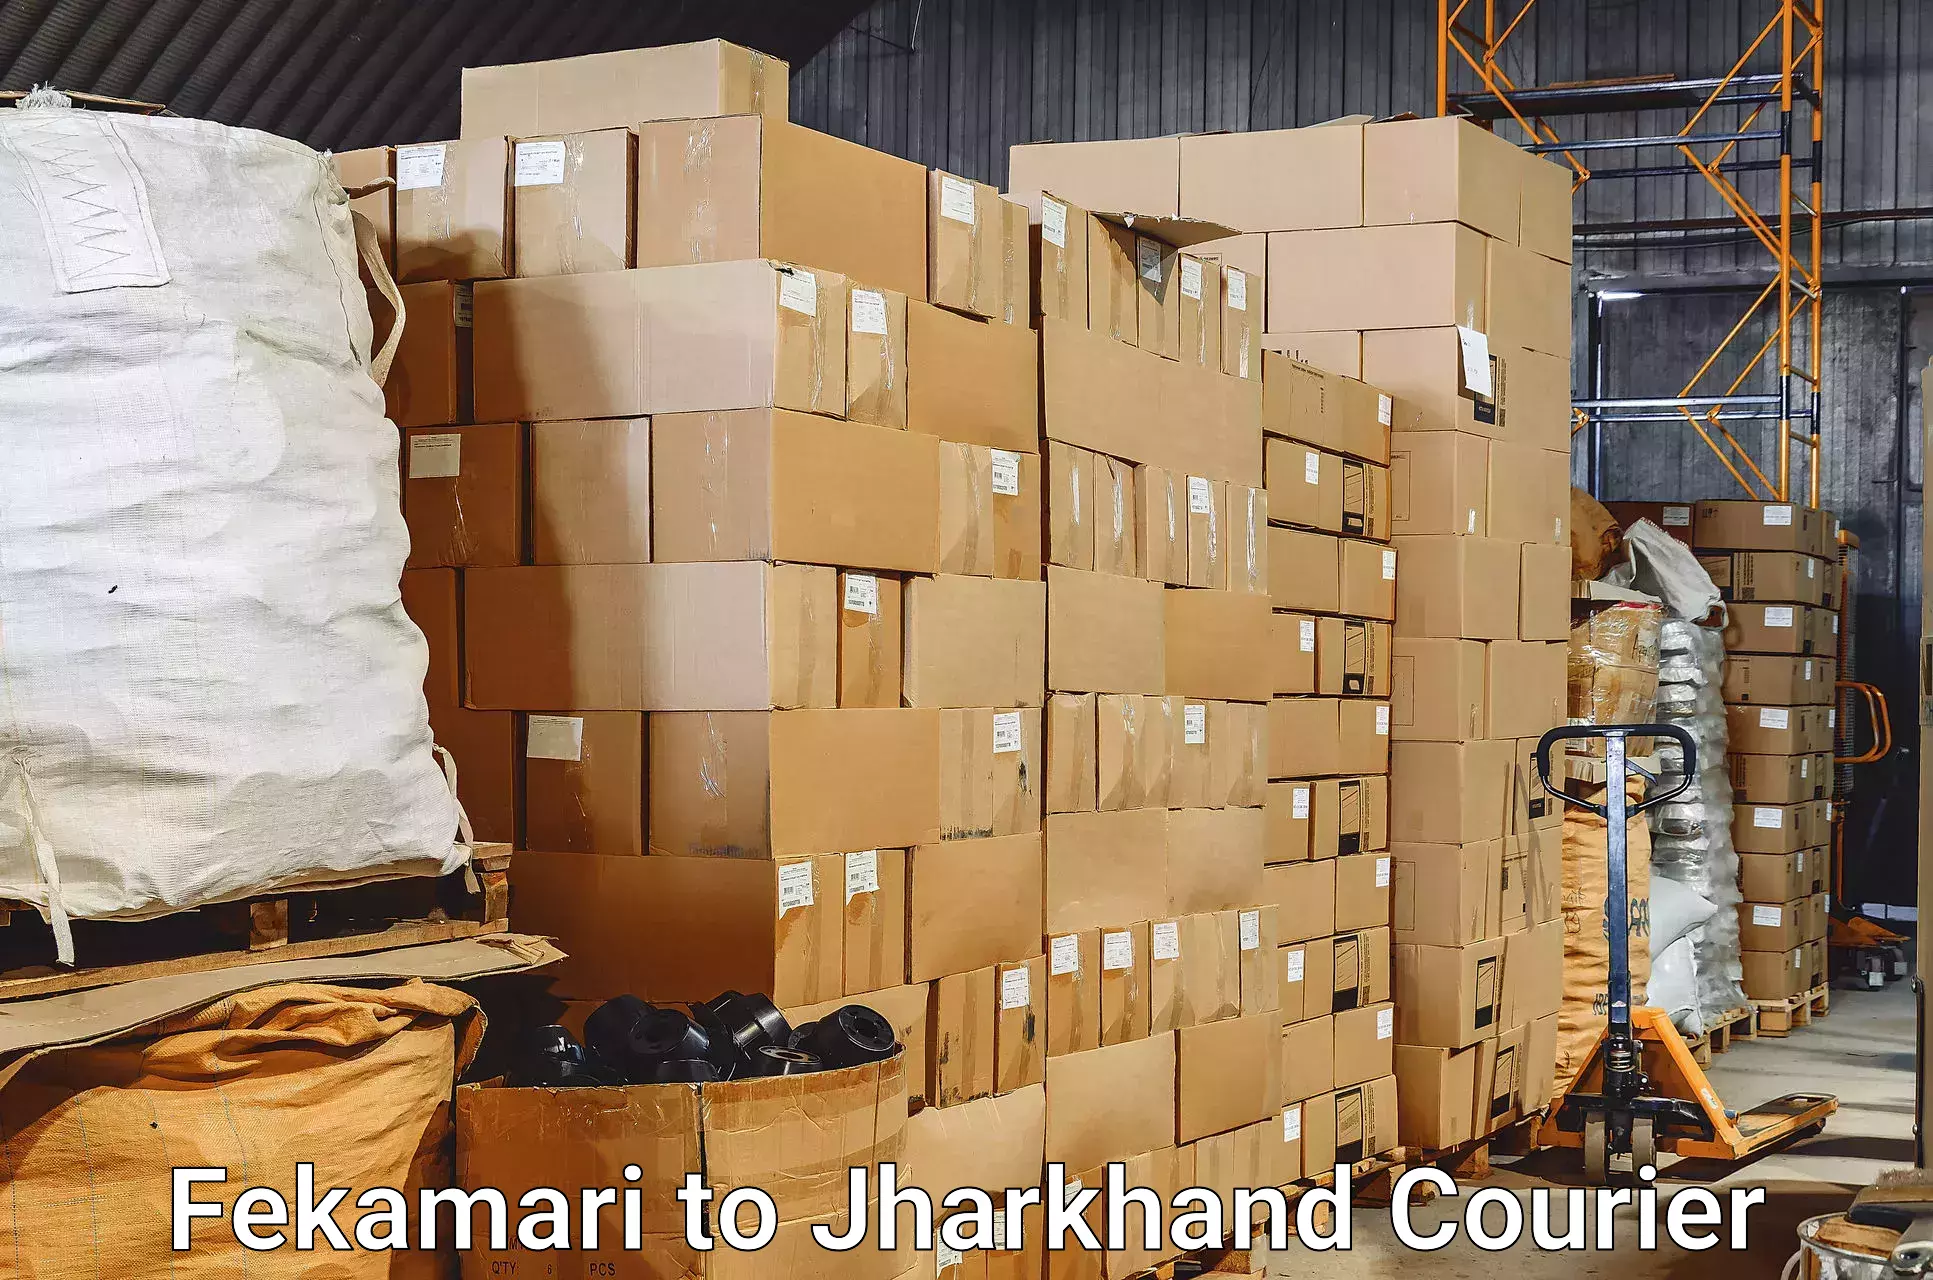 Baggage shipping service Fekamari to Ranchi